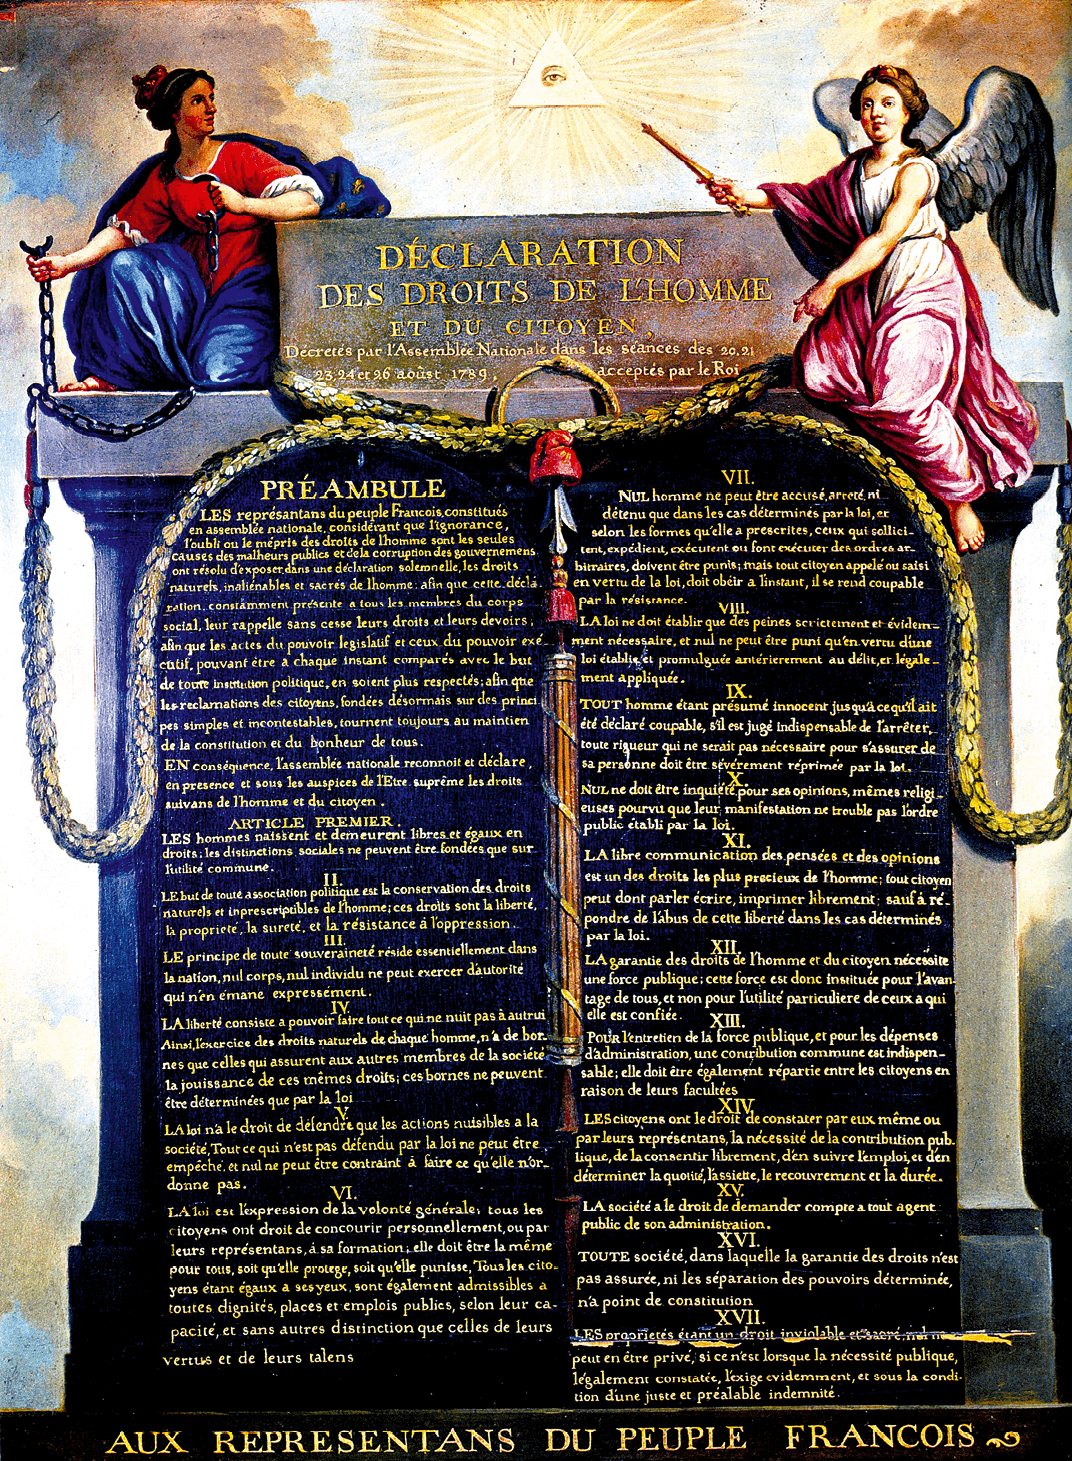 Jean-Jacques Le Barbier, Déclaration des Droits de l'Homme et du Citoyen,
vers 1789, huile sur toile